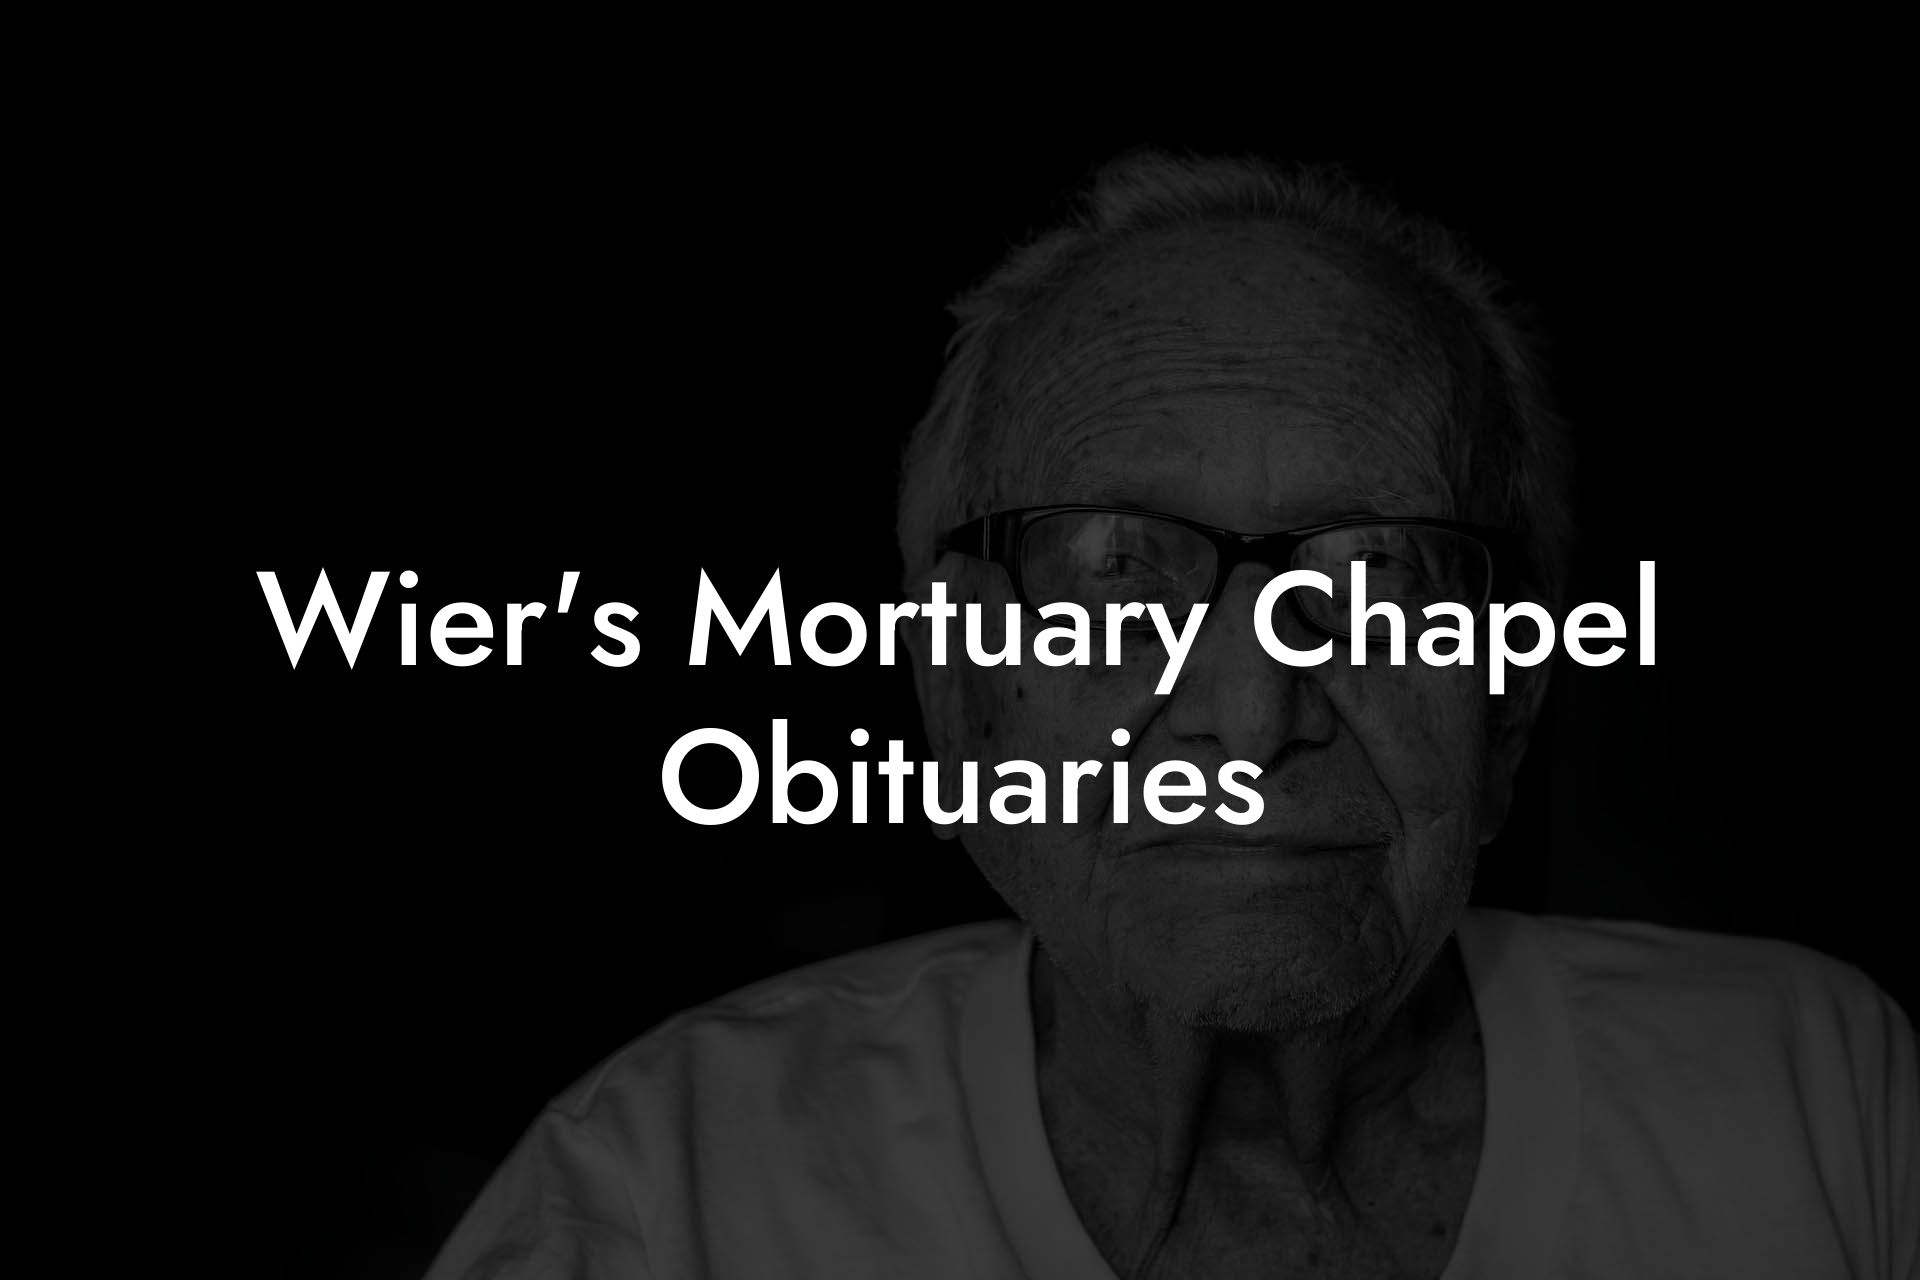 Wier's Mortuary Chapel Obituaries